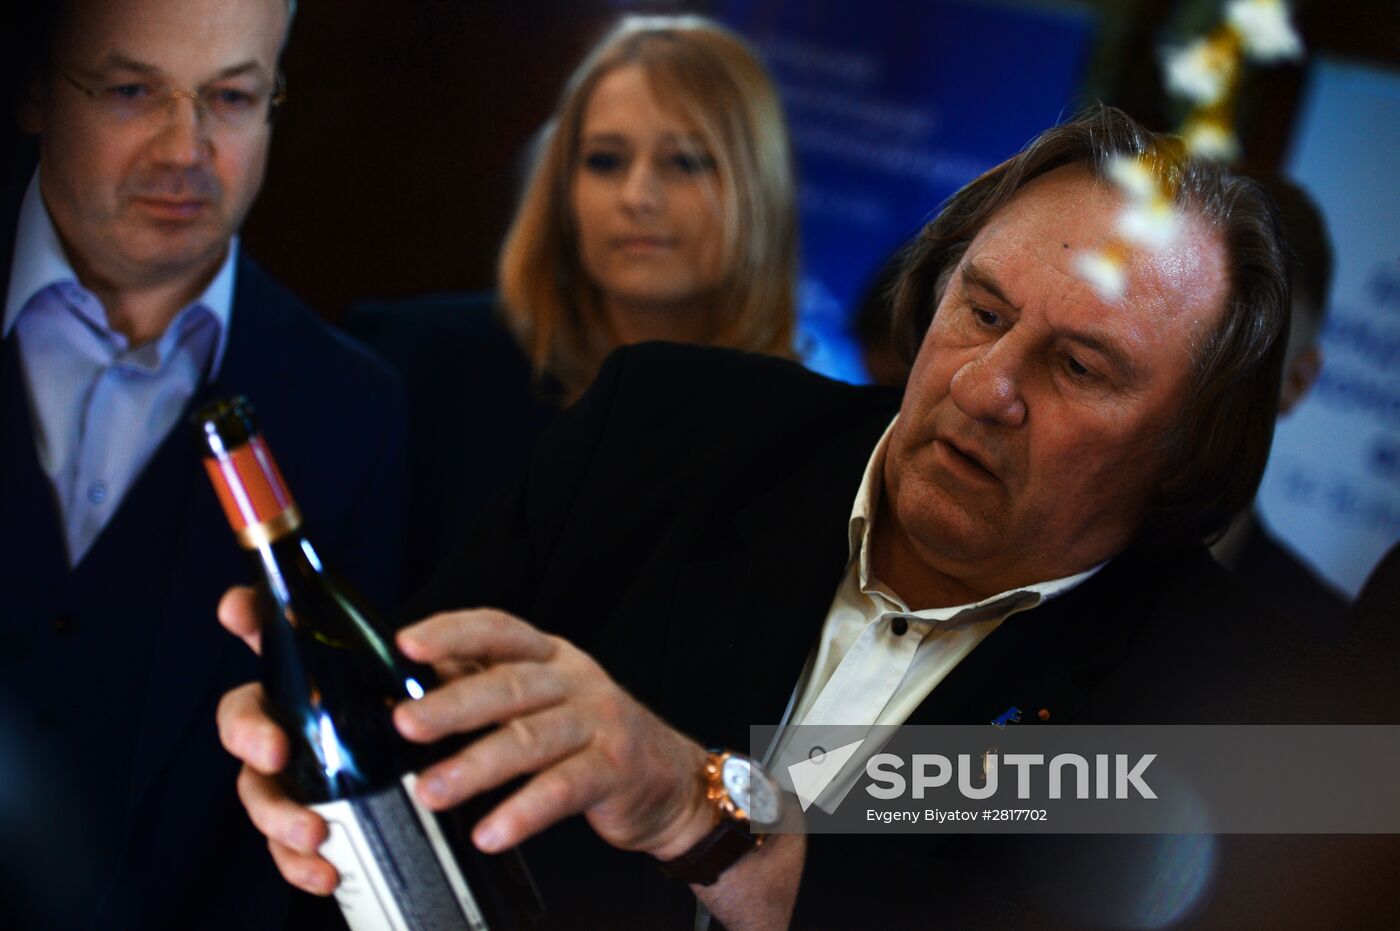 Tasting Crimean wines with Gerard Depardieu